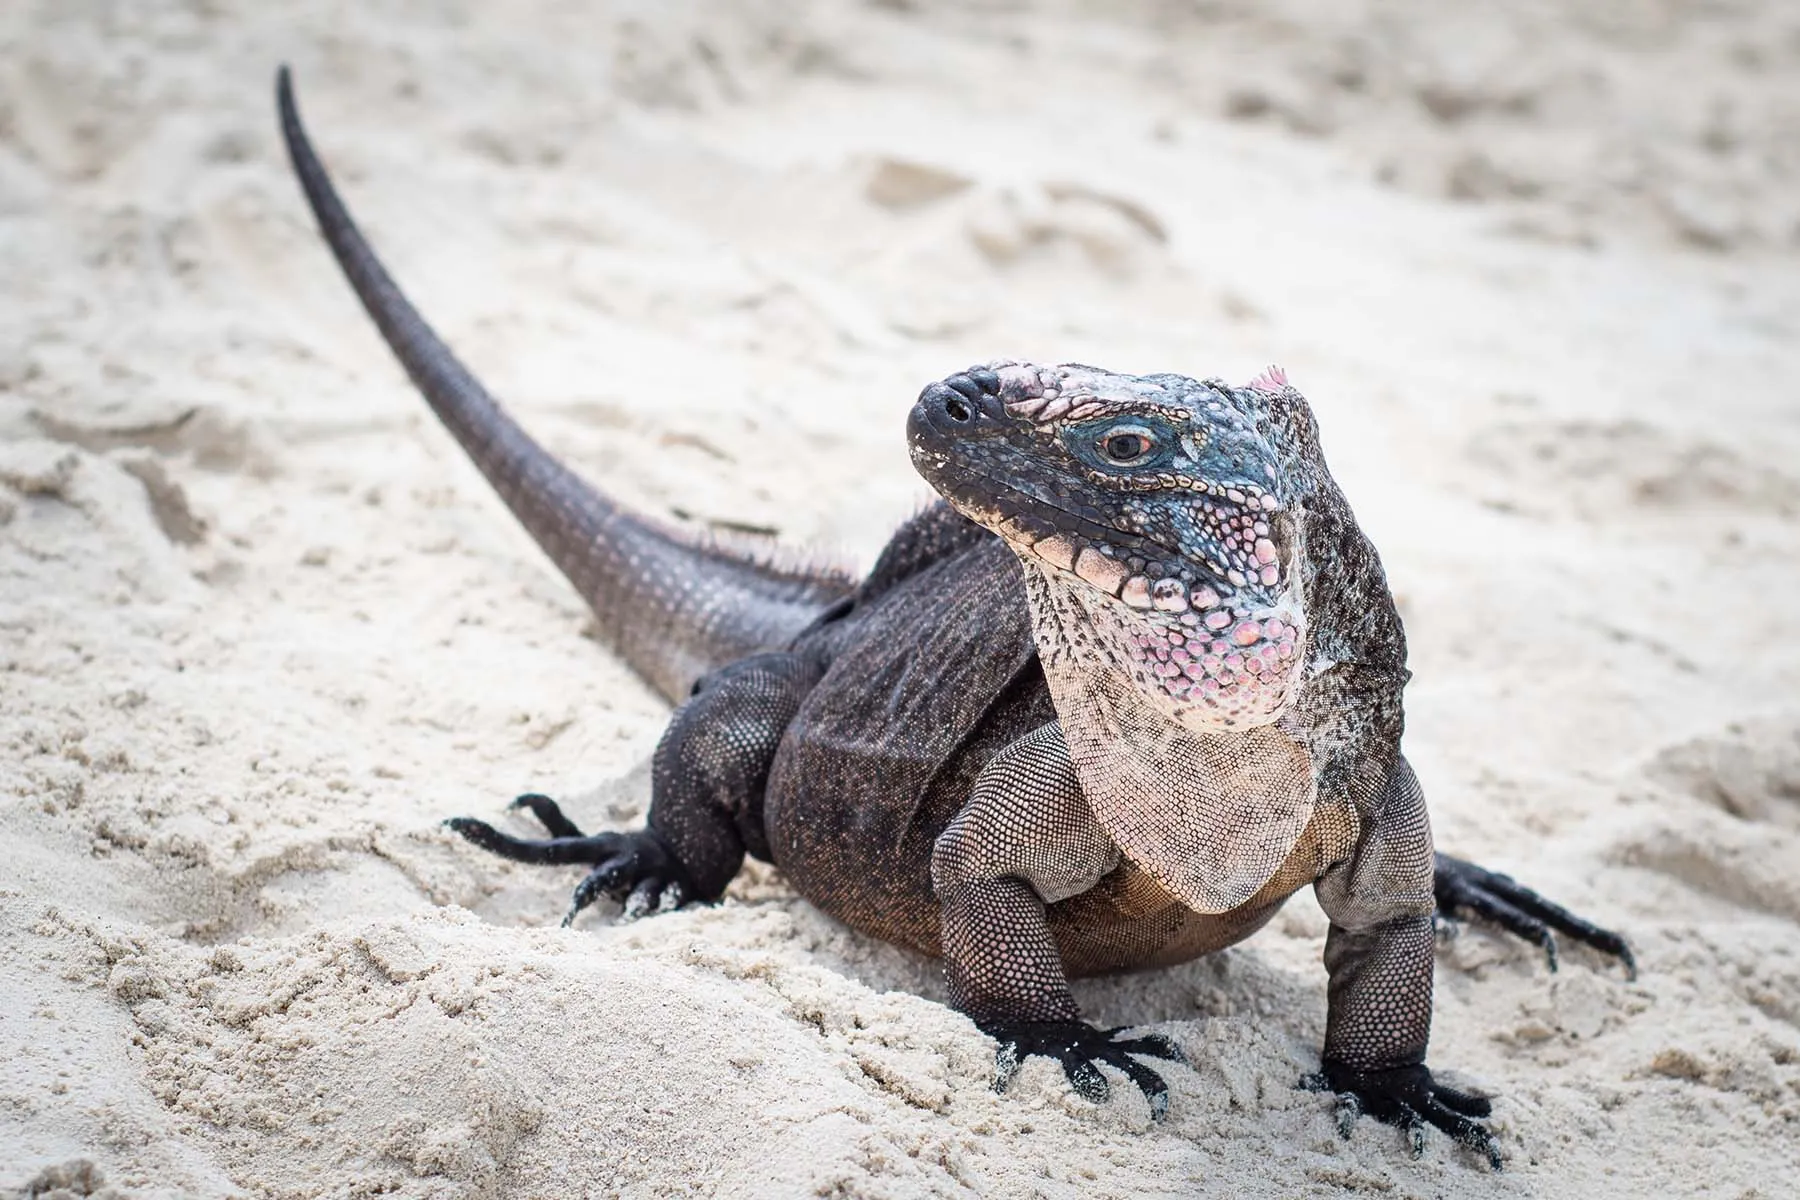 photo of iguana